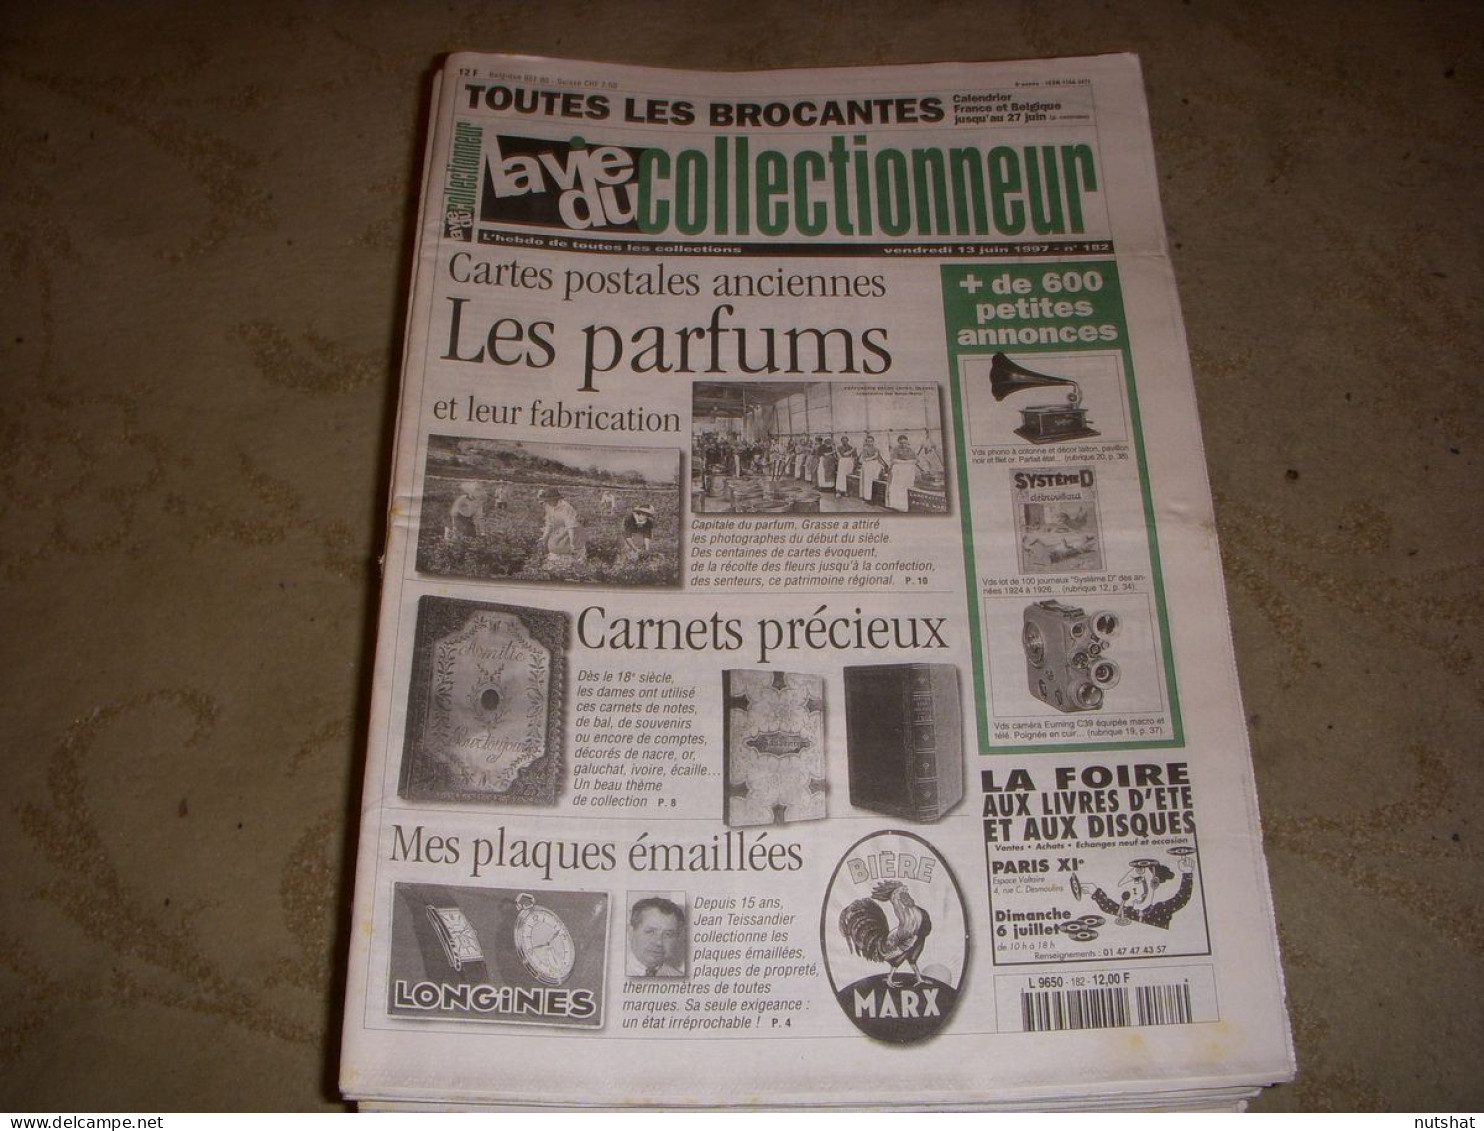 LVC VIE Du COLLECTIONNEUR 182 13.06.1997 PARFUM CARNET PRECIEUX PLAQUE EMAILL  - Trödler & Sammler